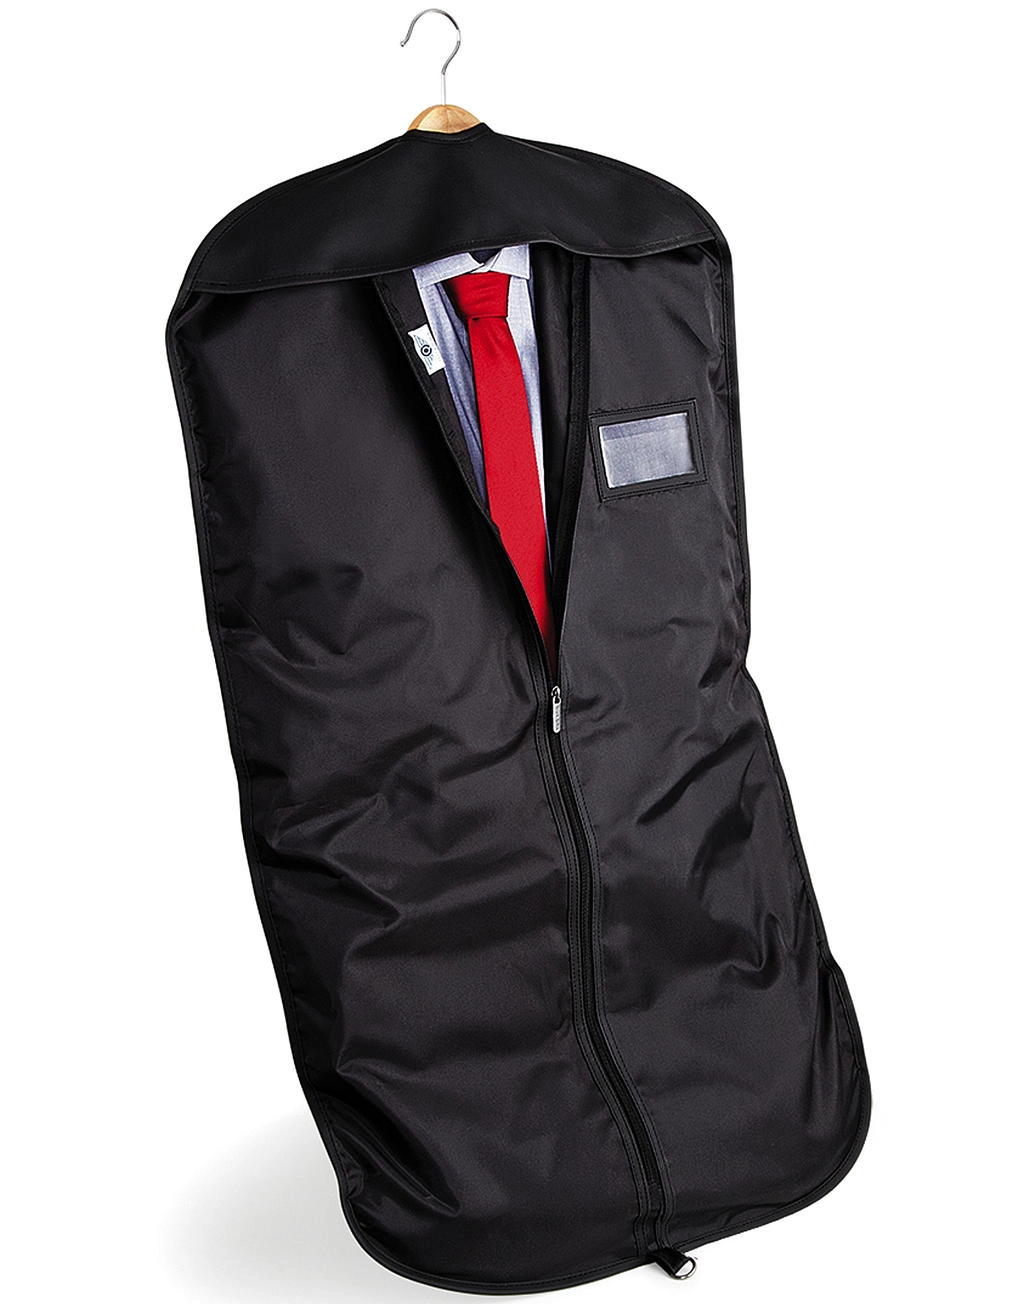 Deluxe Suit Bag zum Besticken und Bedrucken mit Ihren Logo, Schriftzug oder Motiv.